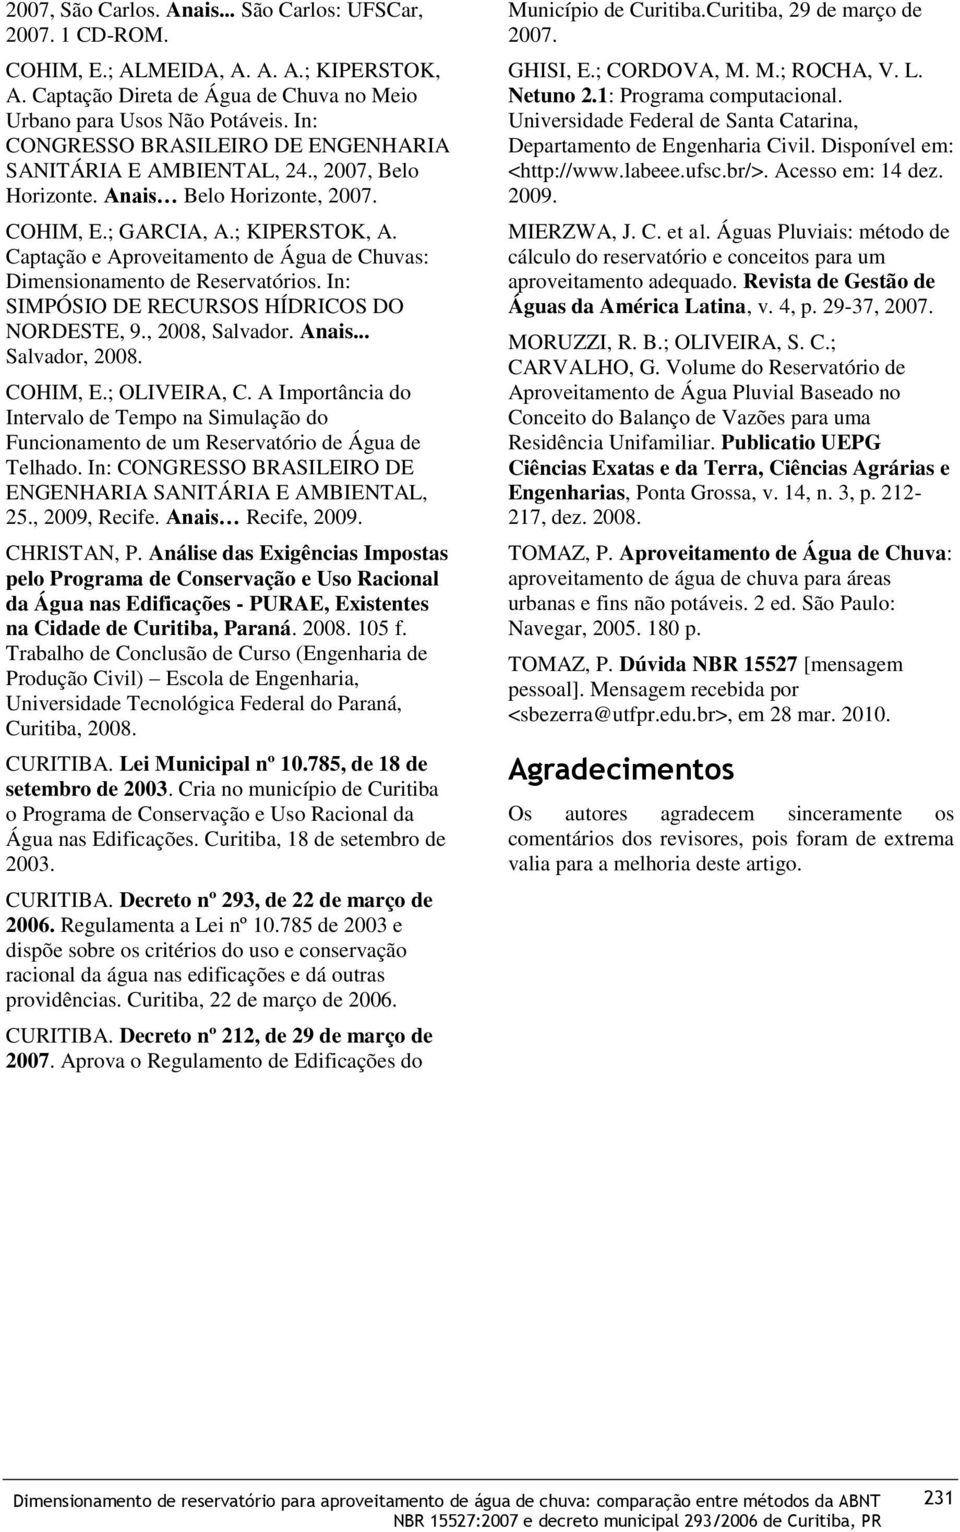 Captação e Aproveitamento de Água de Chuvas: Dimensionamento de Reservatórios. In: SIMPÓSIO DE RECURSOS HÍDRICOS DO NORDESTE, 9., 2008, Salvador. Anais... Salvador, 2008. COHIM, E.; OLIVEIRA, C.